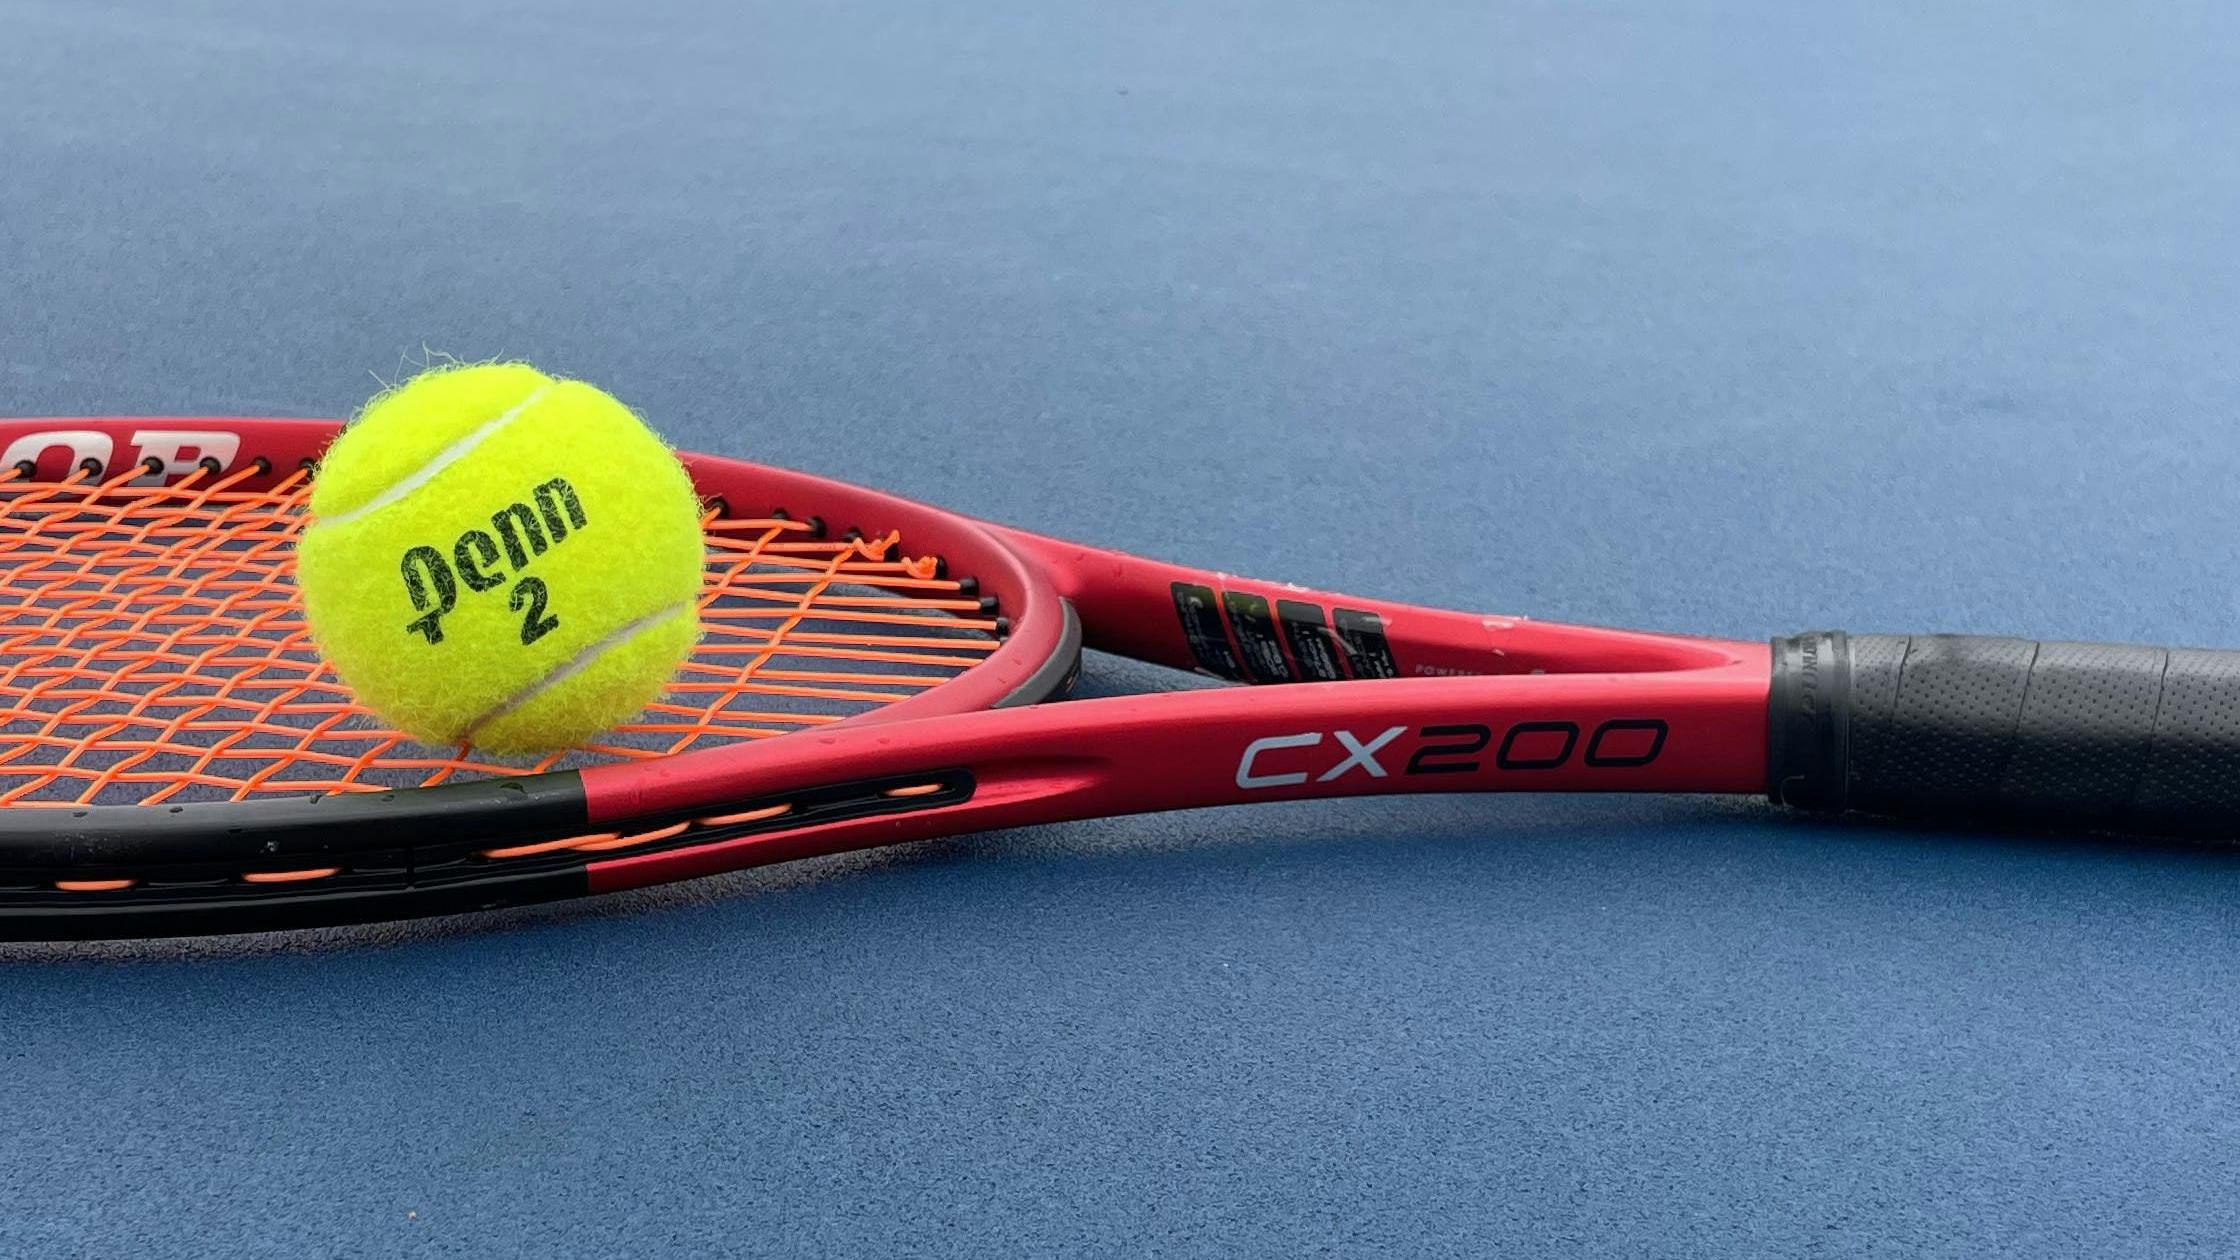 The Dunlop CX 200 98 Racquet · Unstrung.